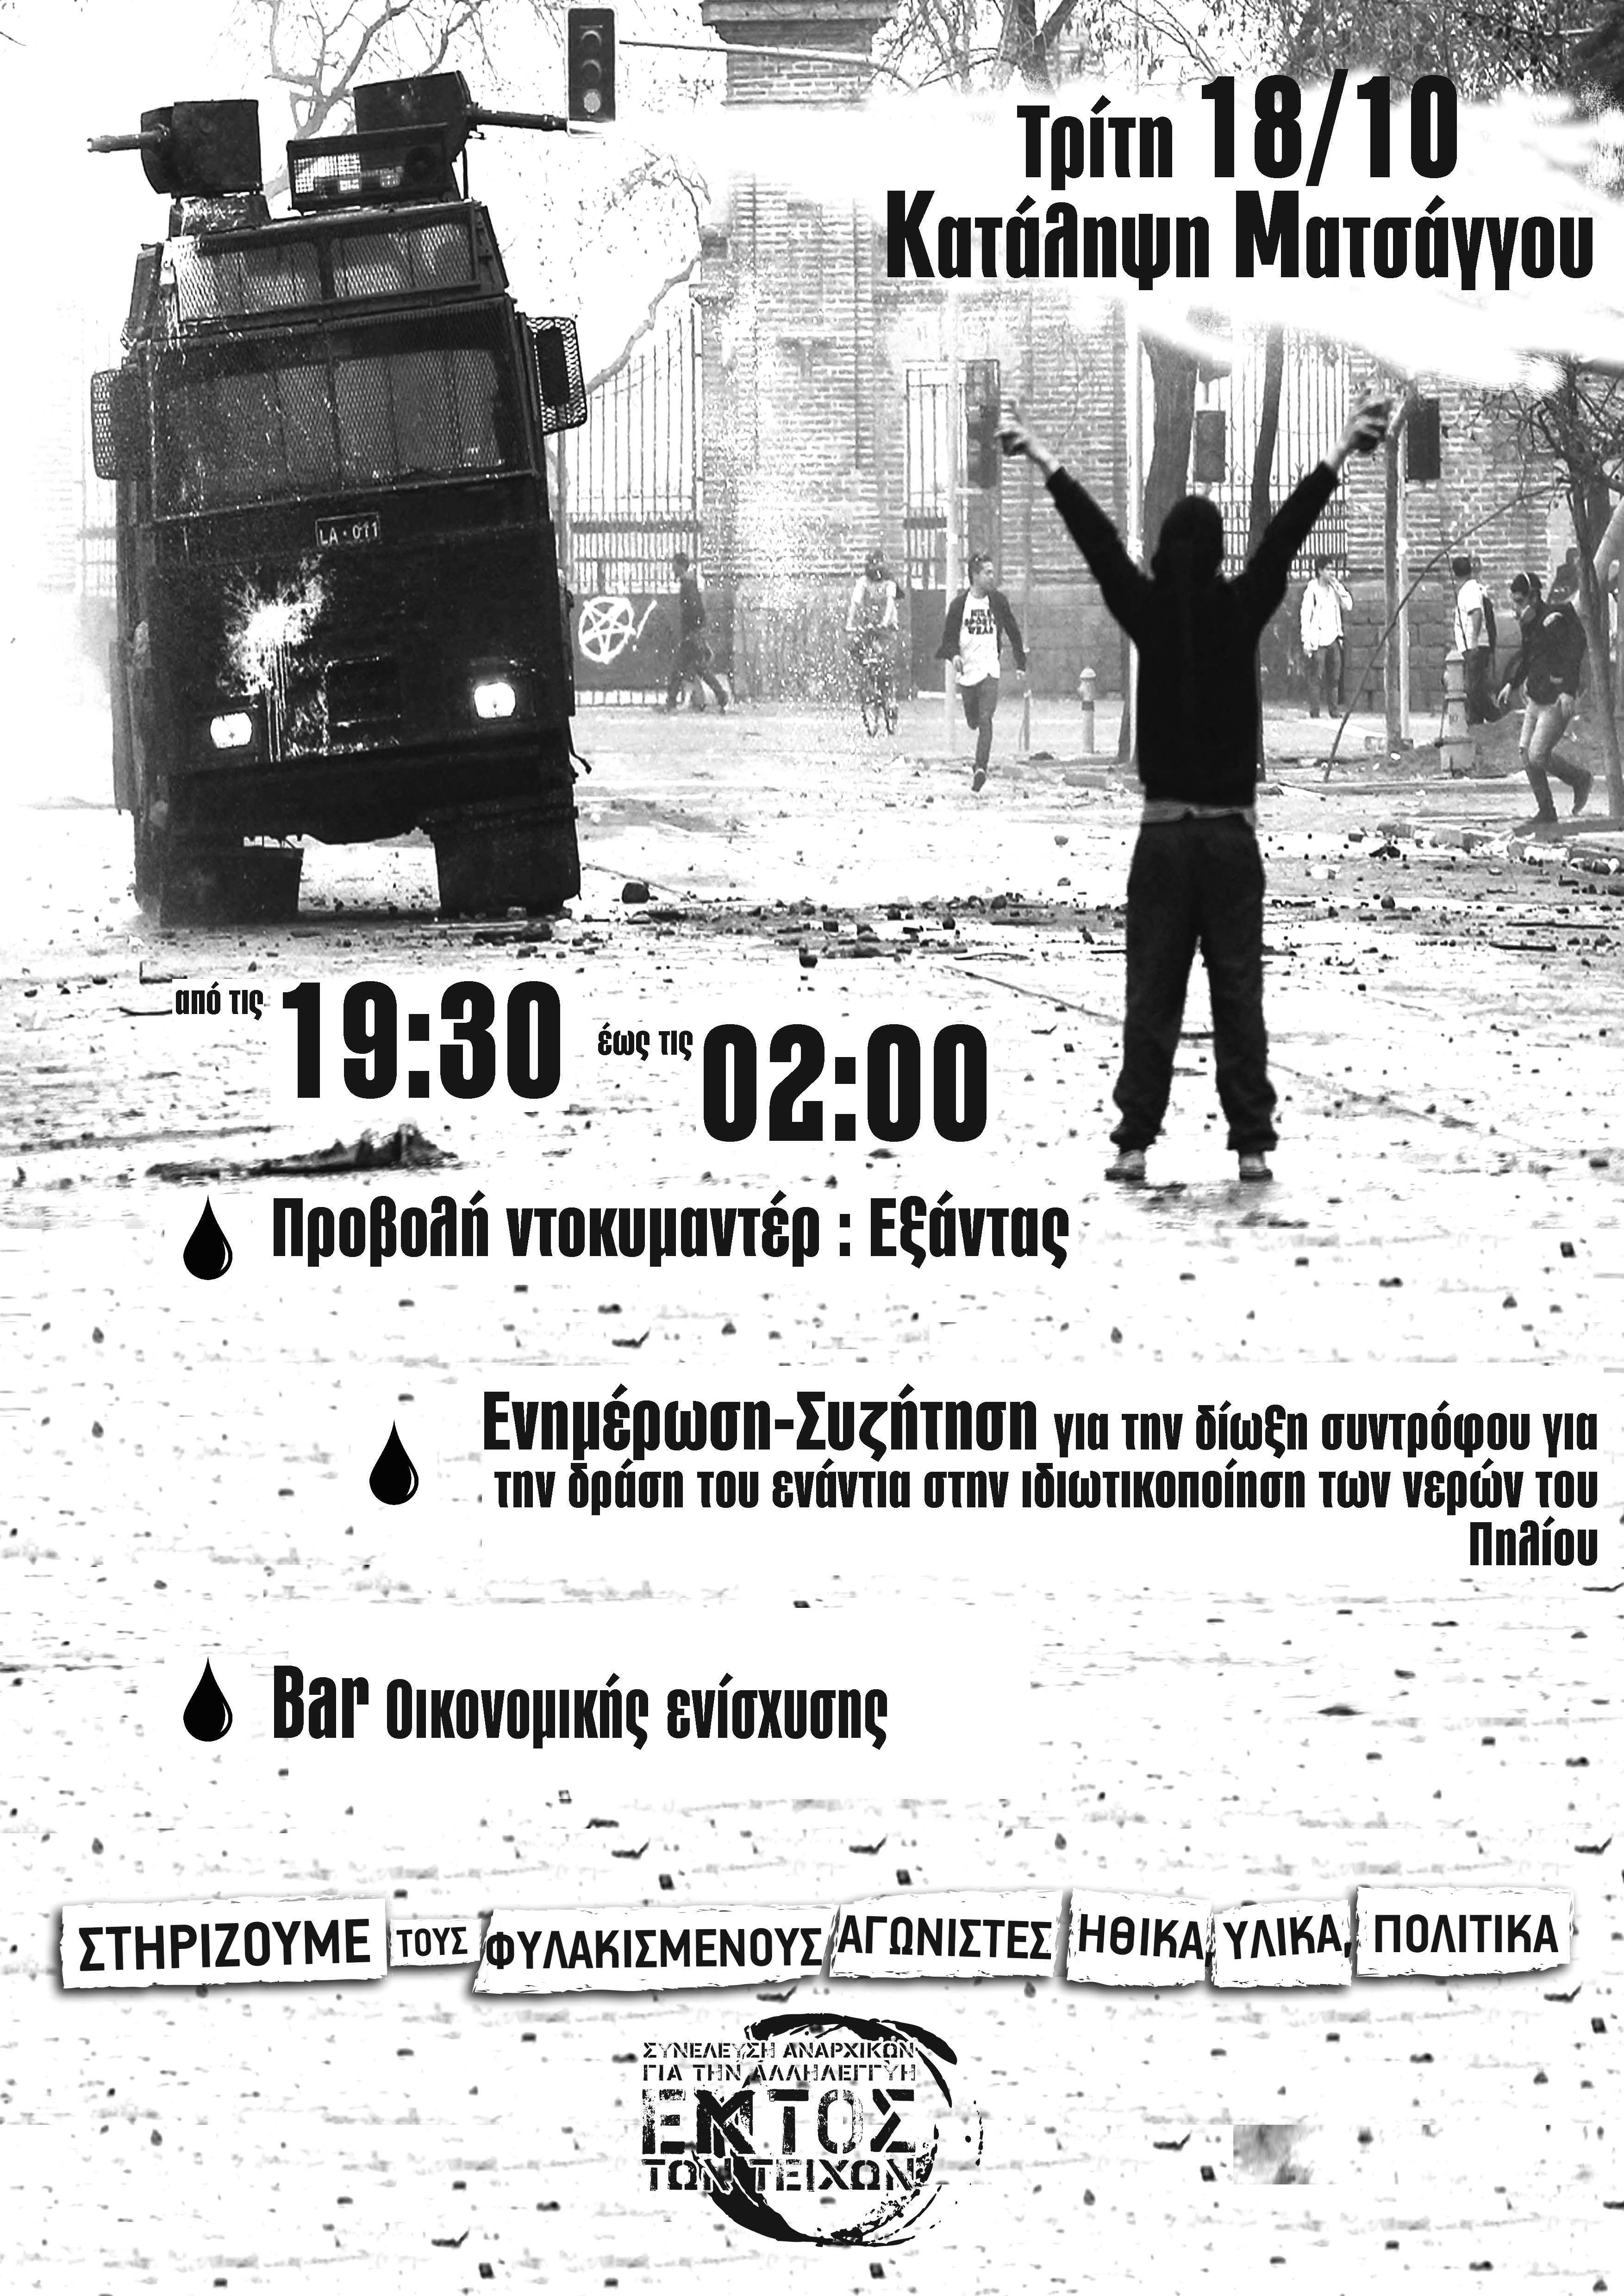 Βόλος: Bar Οικονομικής ενίσχυσης Φυλακισμένων Αγωνιστών [Τρίτη 18/10, 19:30]